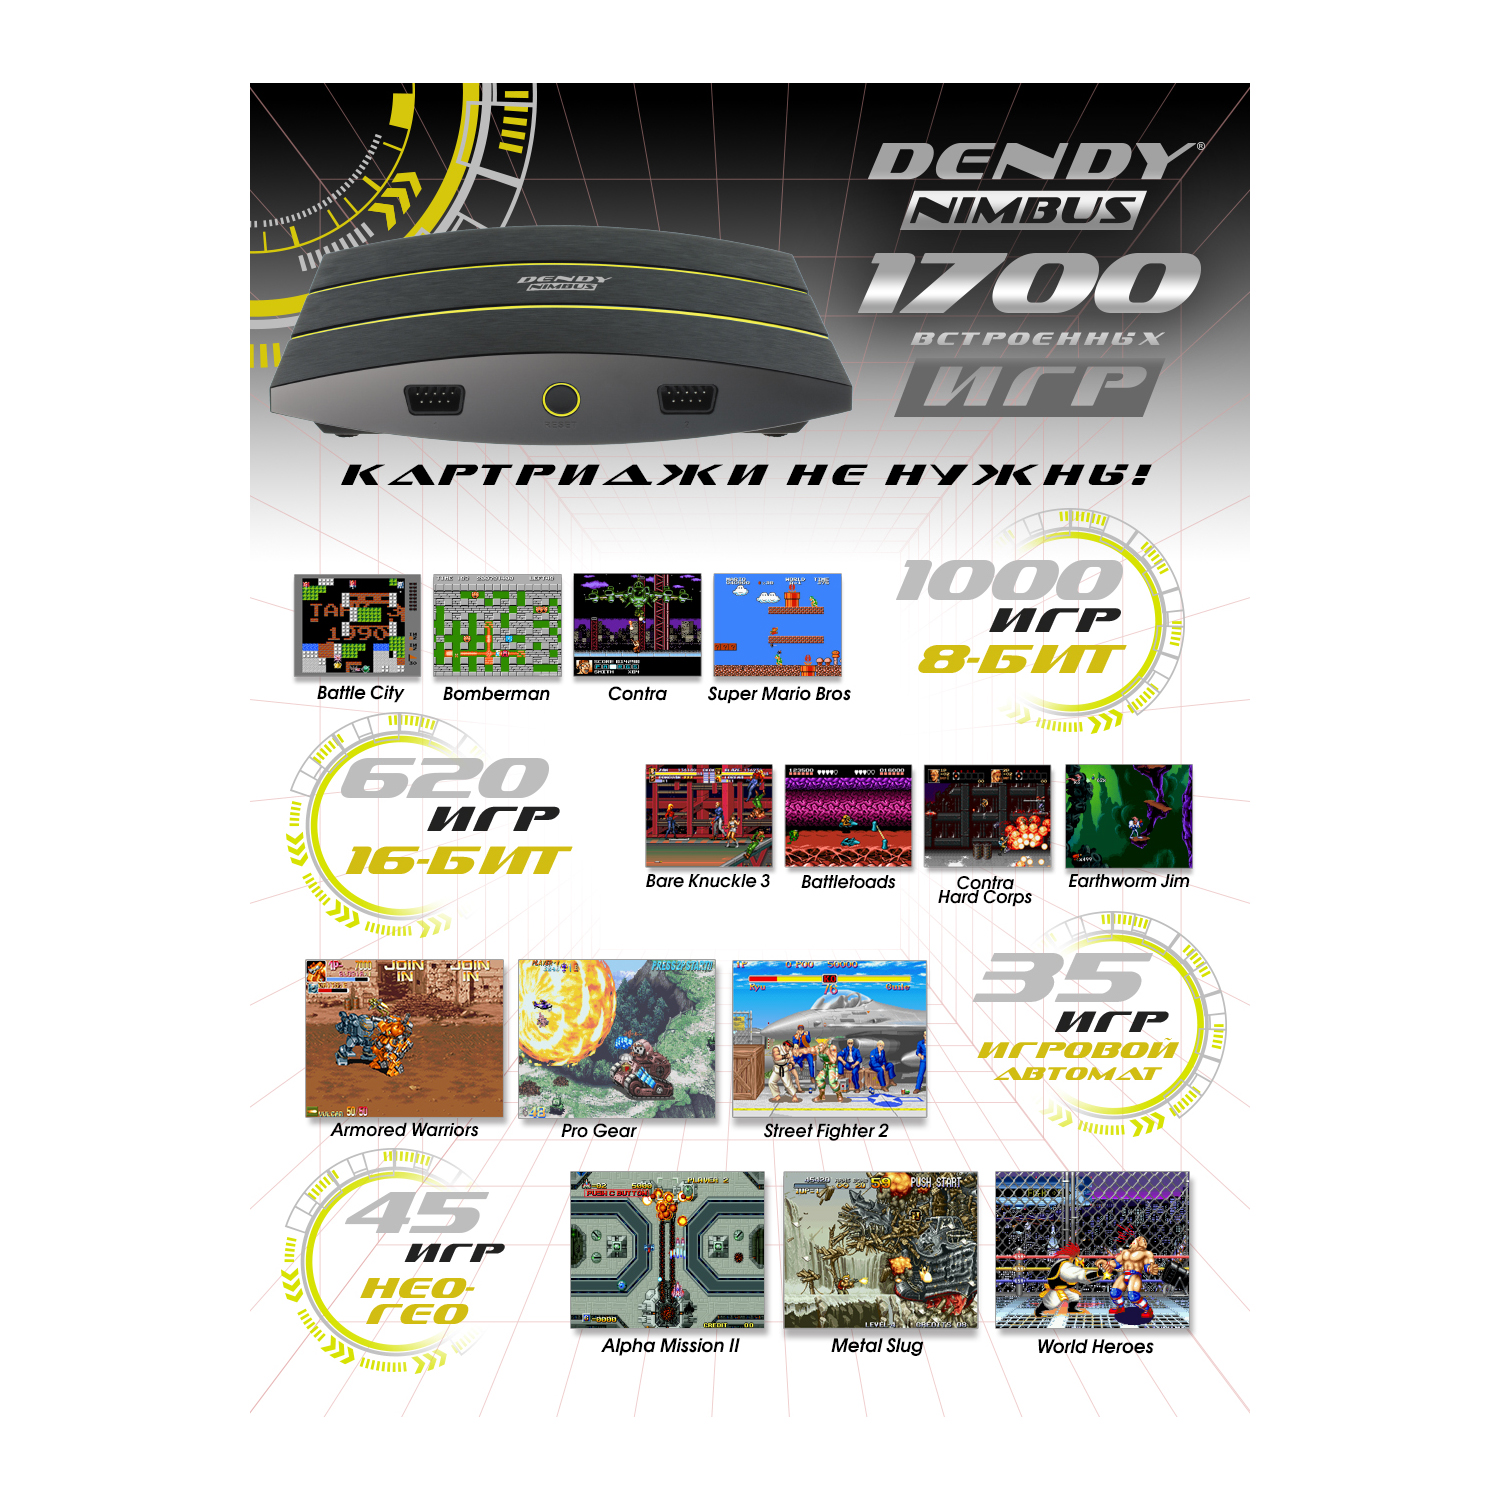 Игровая приставка Dendy Dendy Nimbus 1700 встроенных игр - фото 4